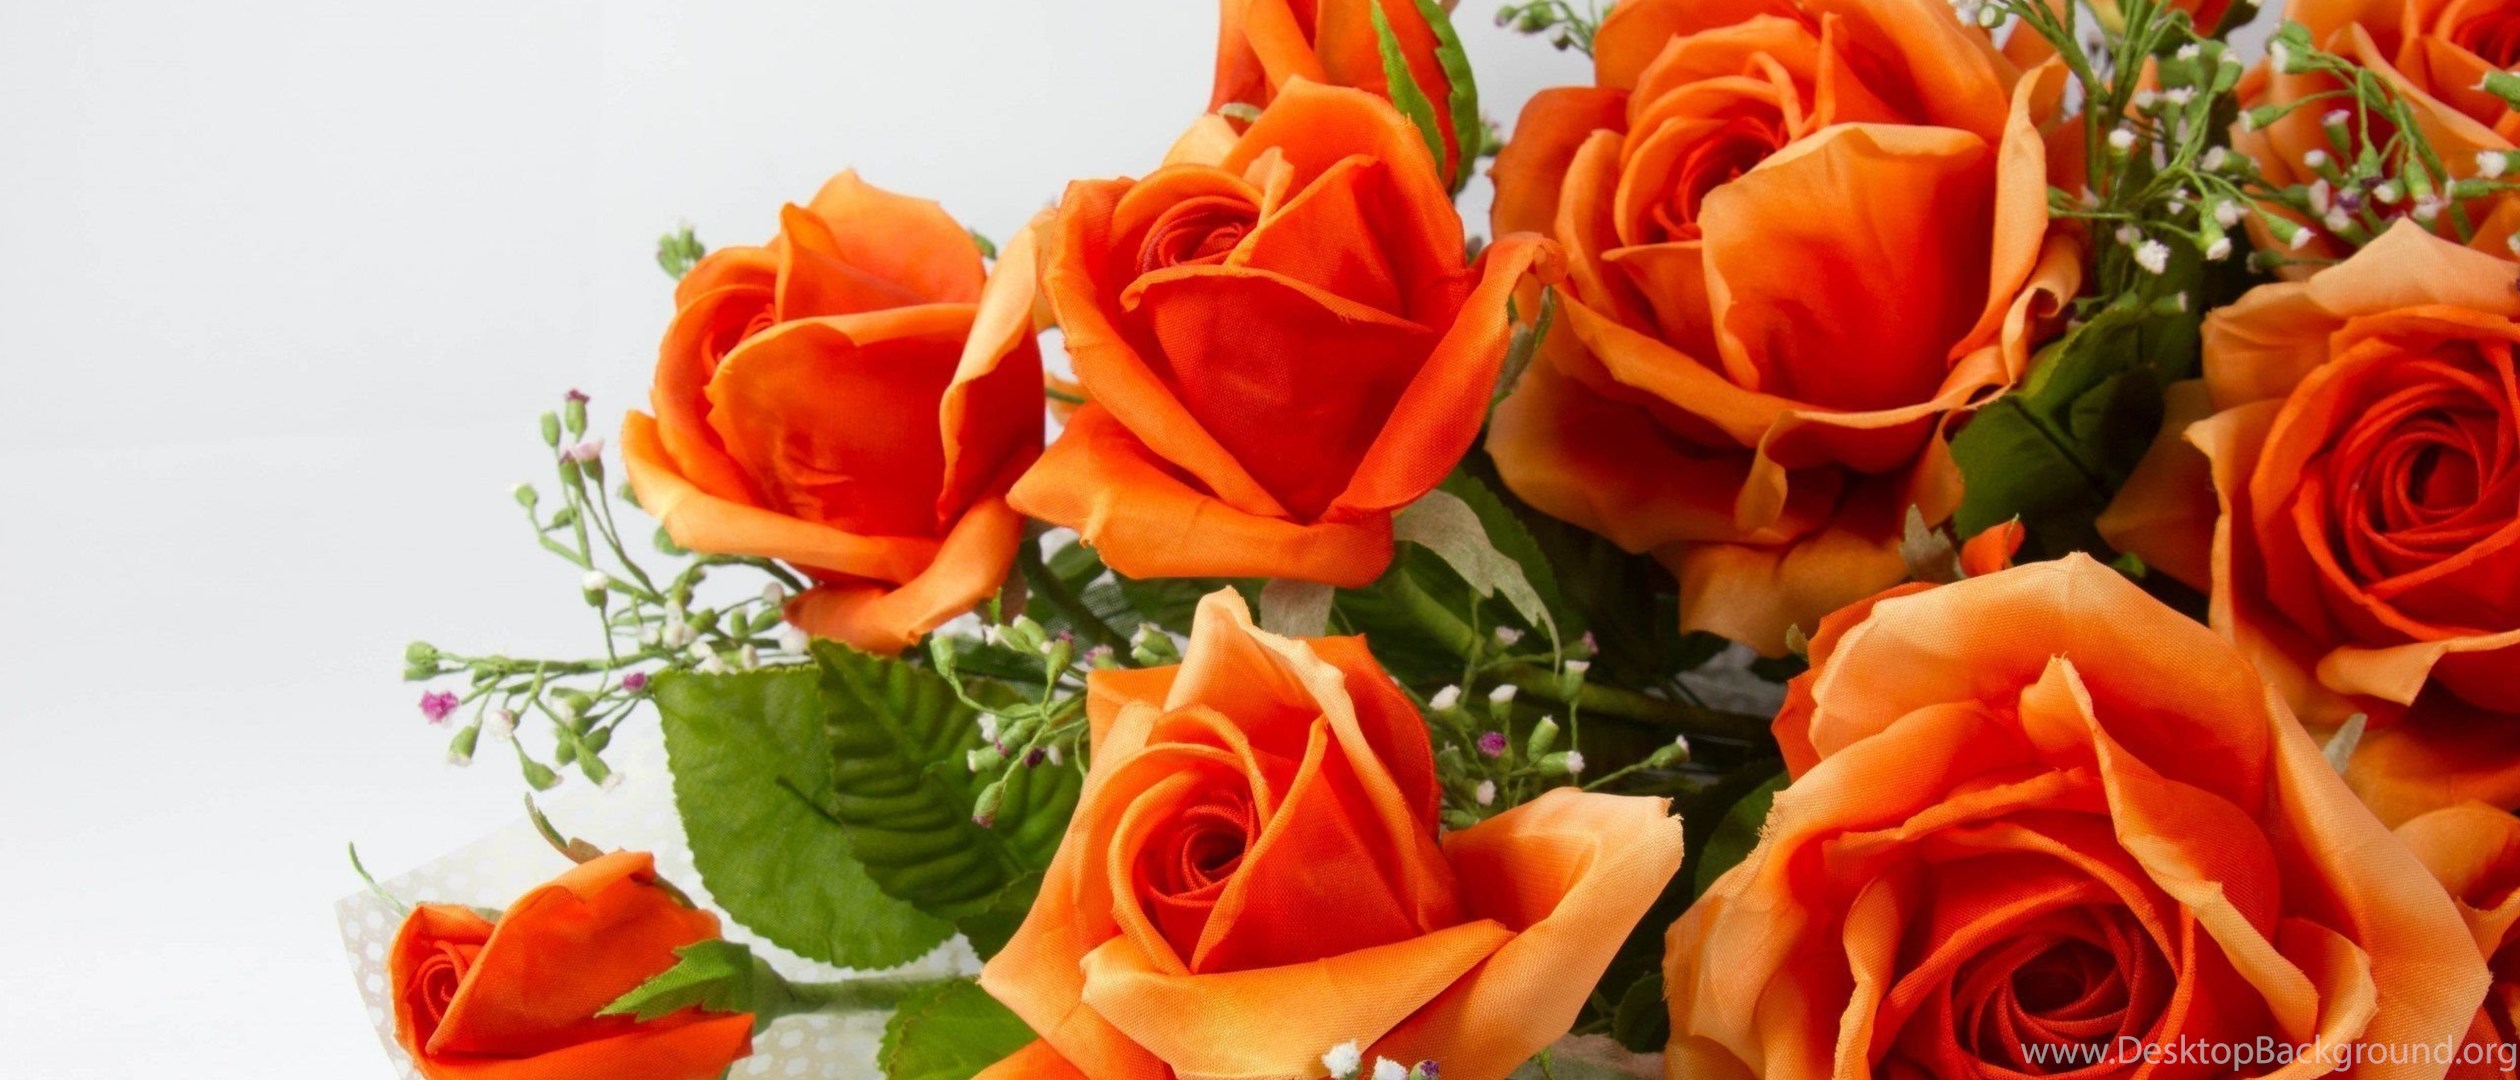 Как быть всегда шикарной. Оранжевые розы. Красивые оранжевые розы. Прекрасной женщине цветы. Открытка самой обаятельной и привлекательной.